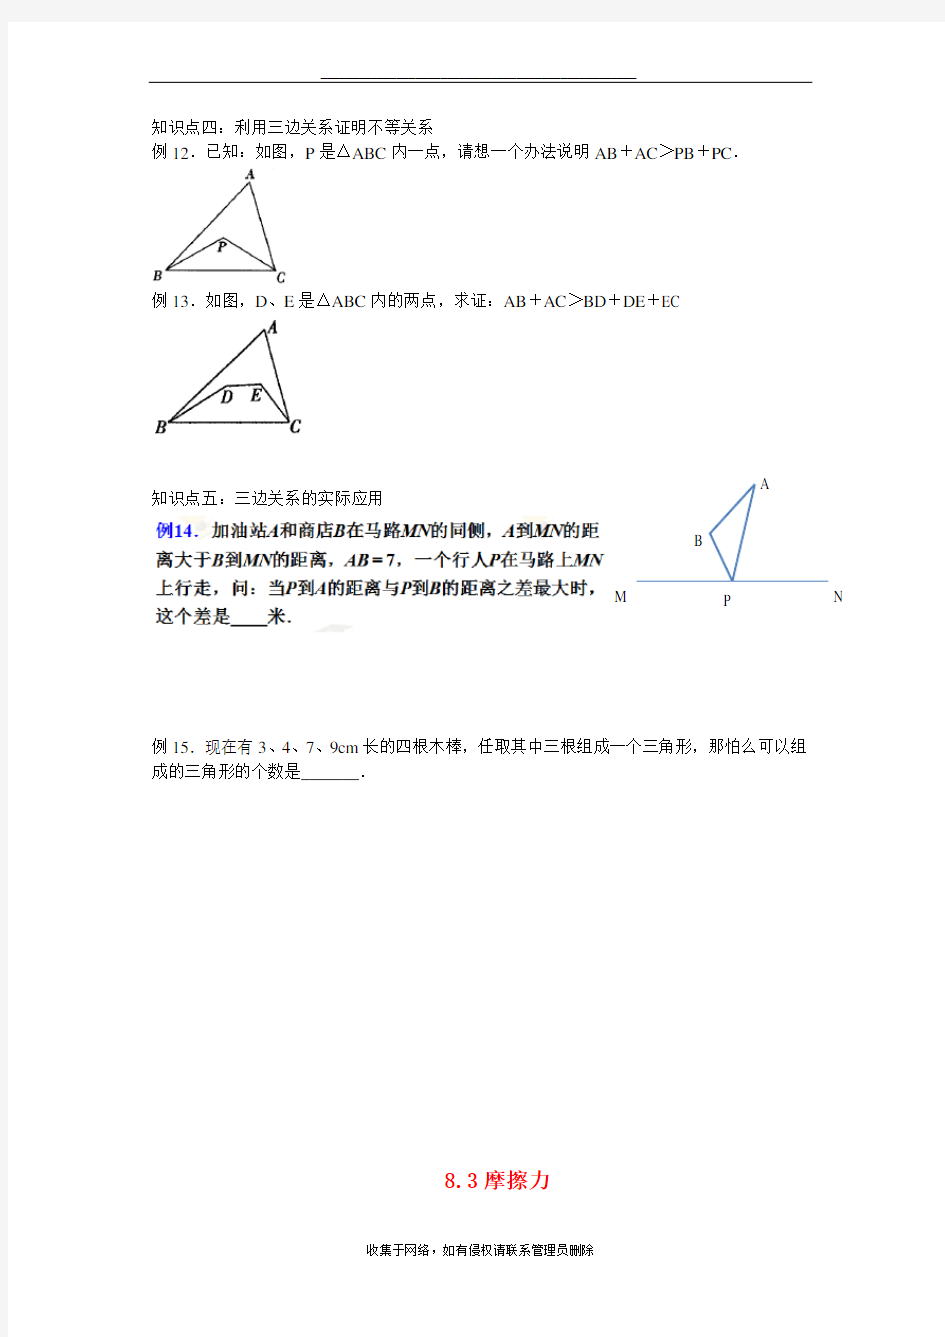 最新三角形三边关系的典型应用